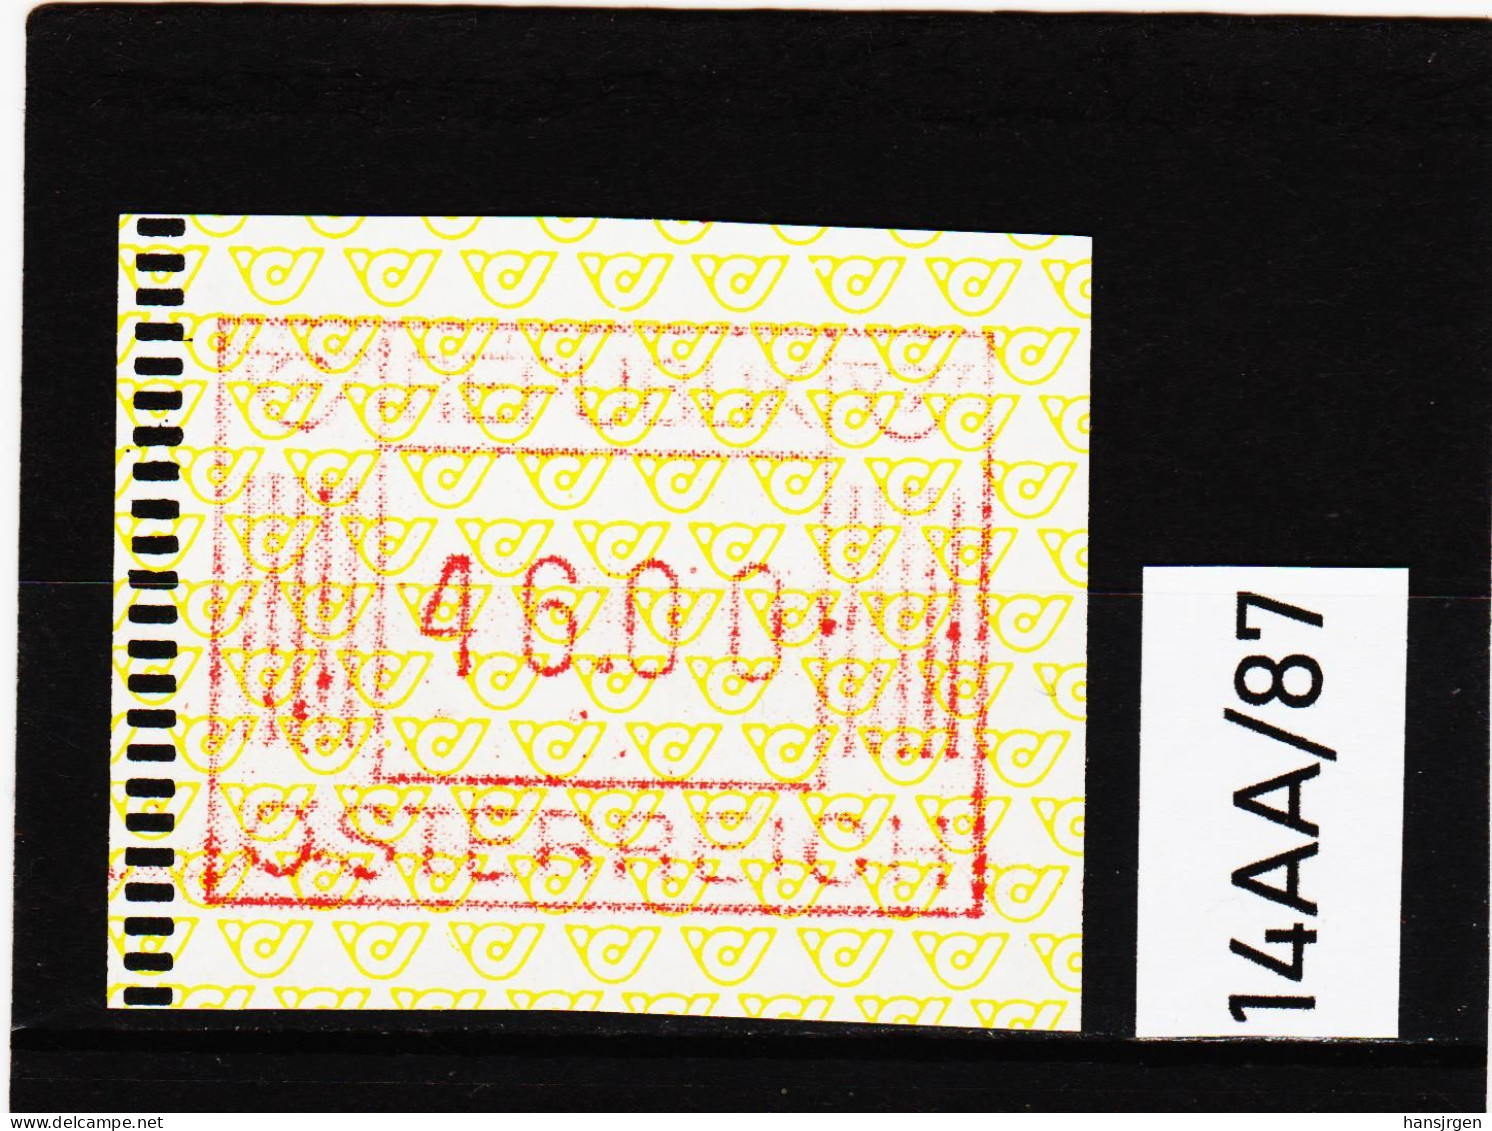 14AA/87  ÖSTERREICH 1983 AUTOMATENMARKEN 1. AUSGABE  46,00 SCHILLING   ** Postfrisch - Automatenmarken [ATM]